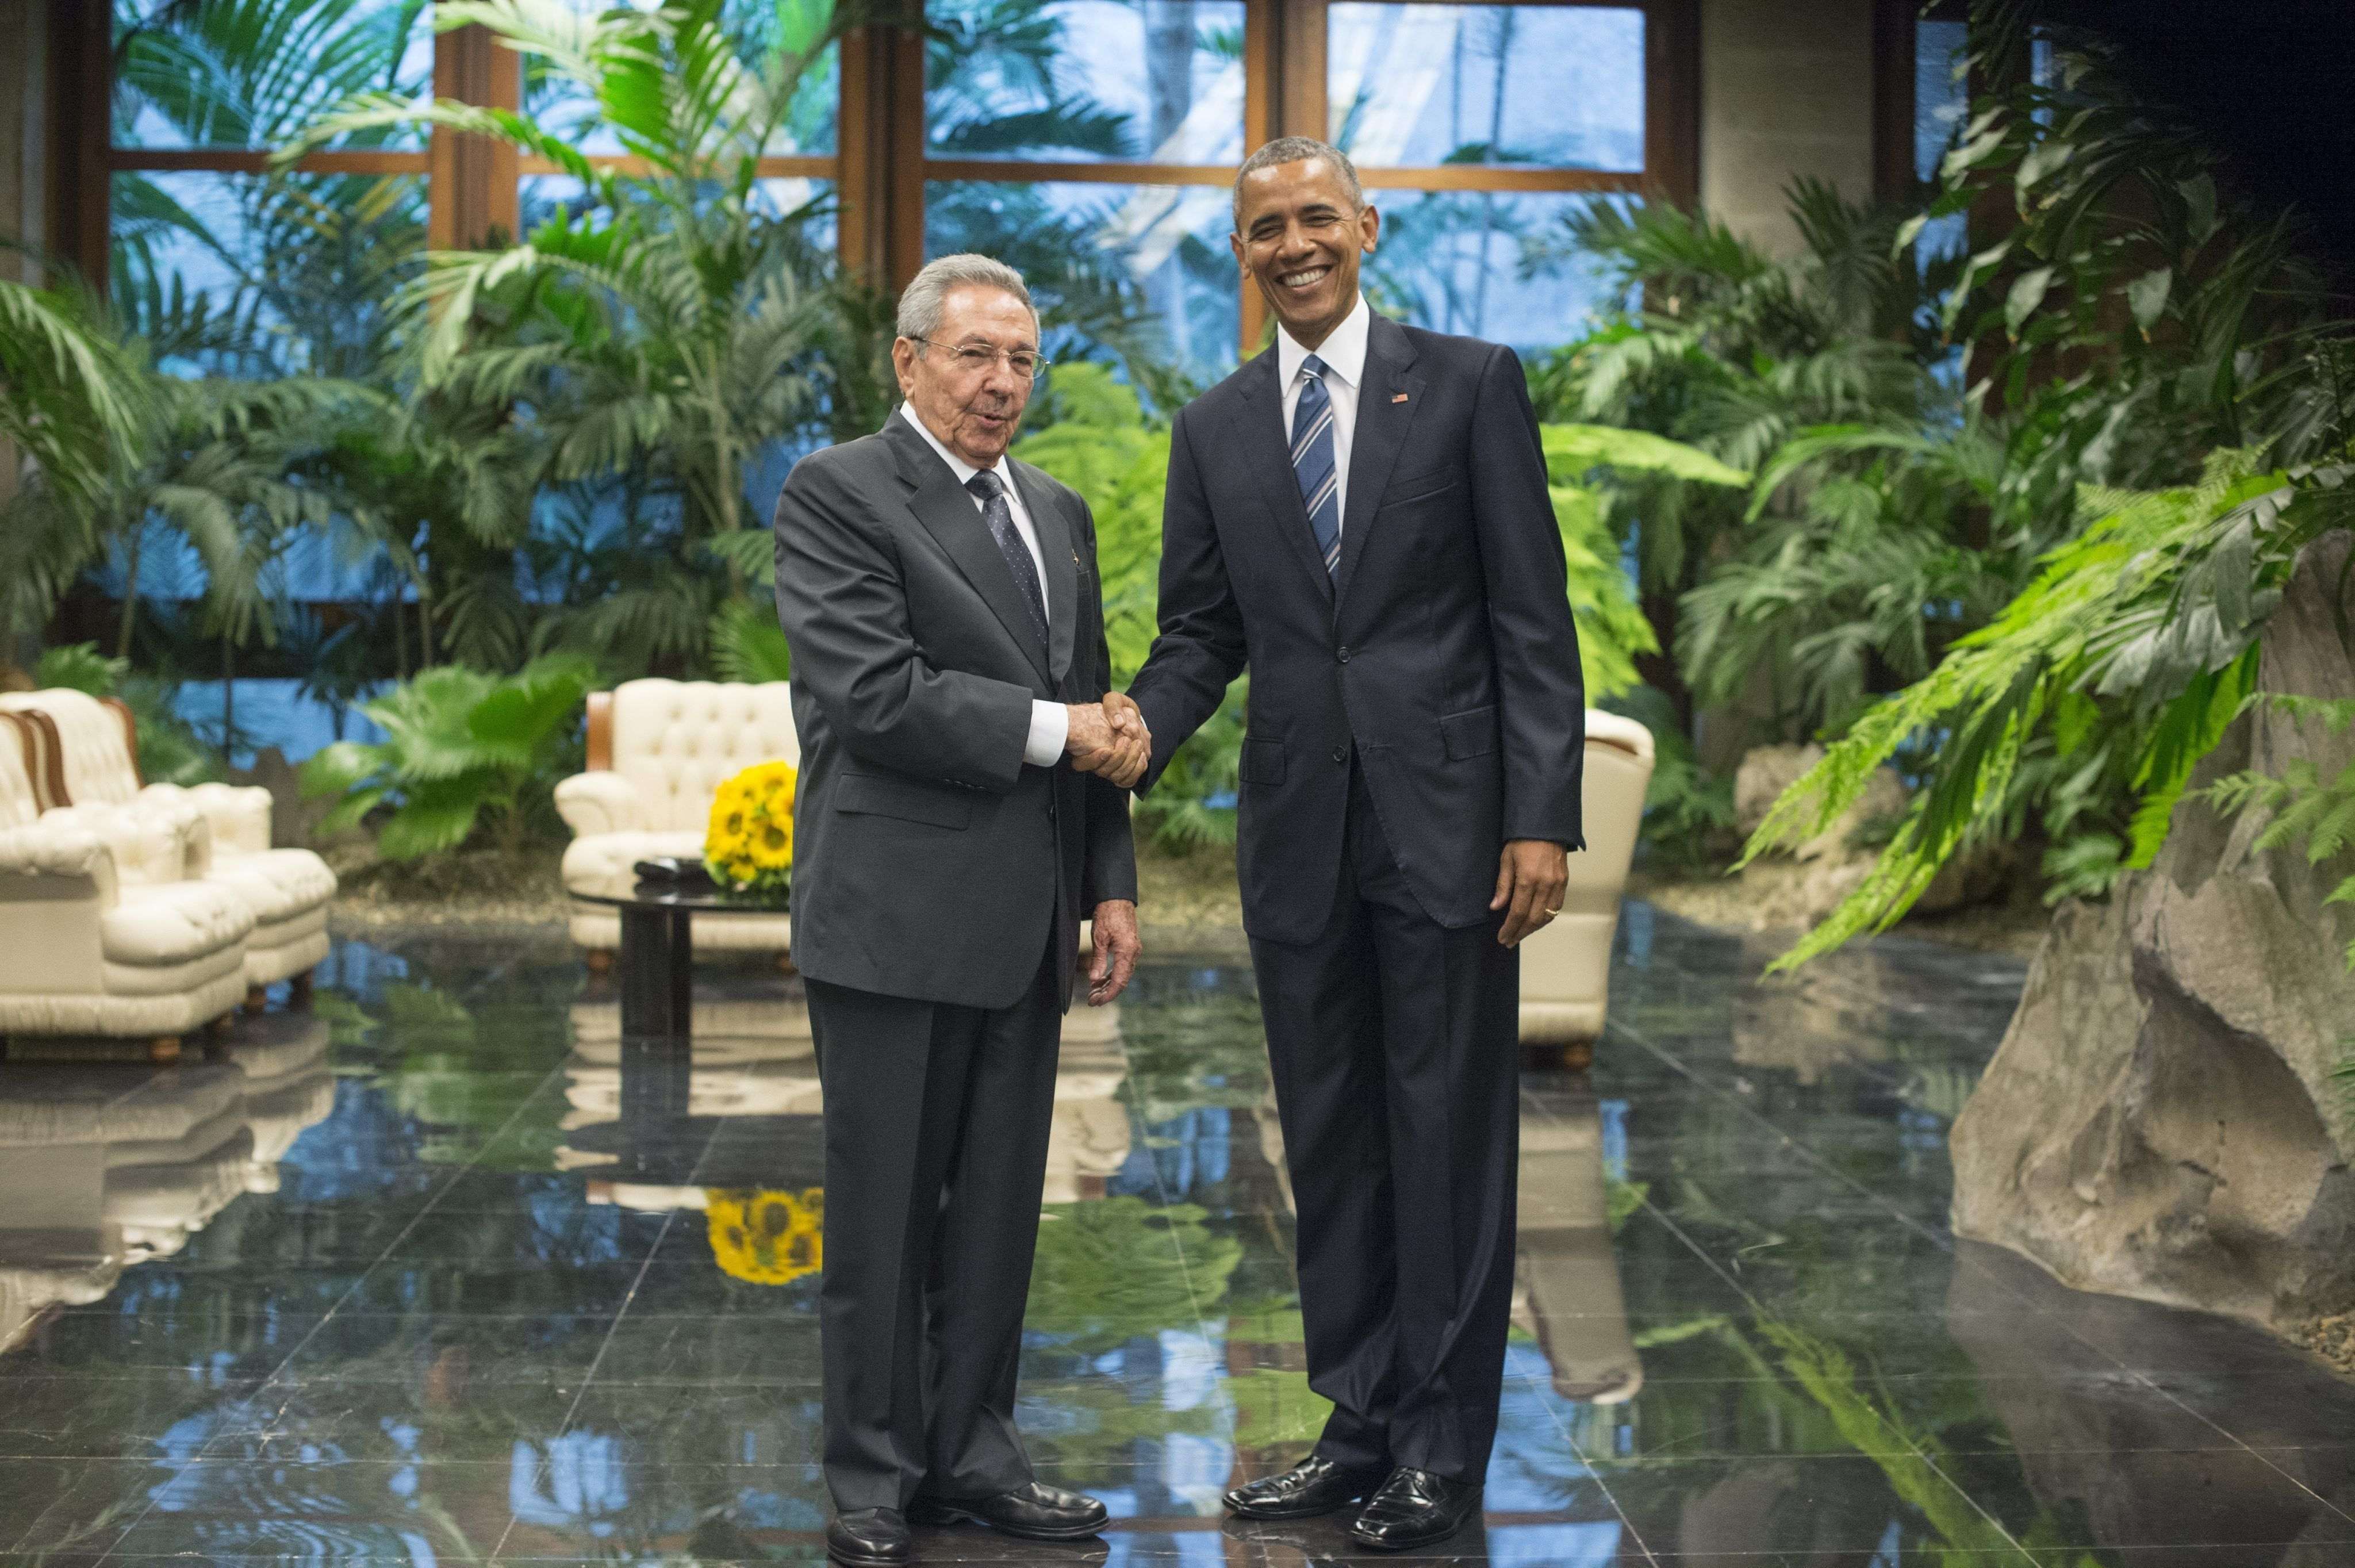 Acaba la visita d'Obama a Cuba amb missatges a favor de la democràcia